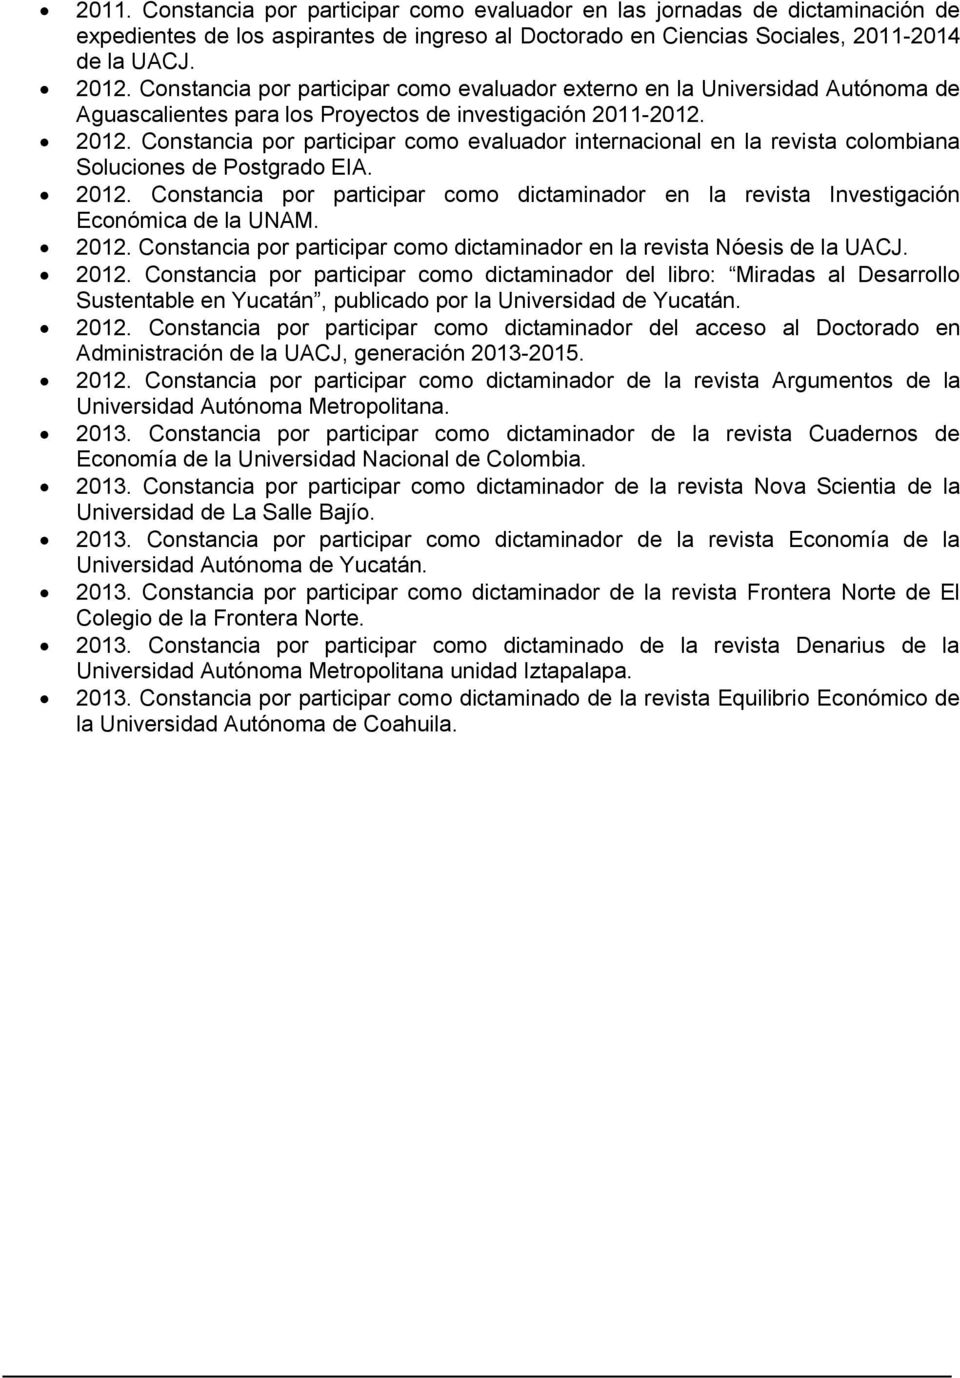 Constancia por participar como evaluador internacional en la revista colombiana Soluciones de Postgrado EIA. 2012.